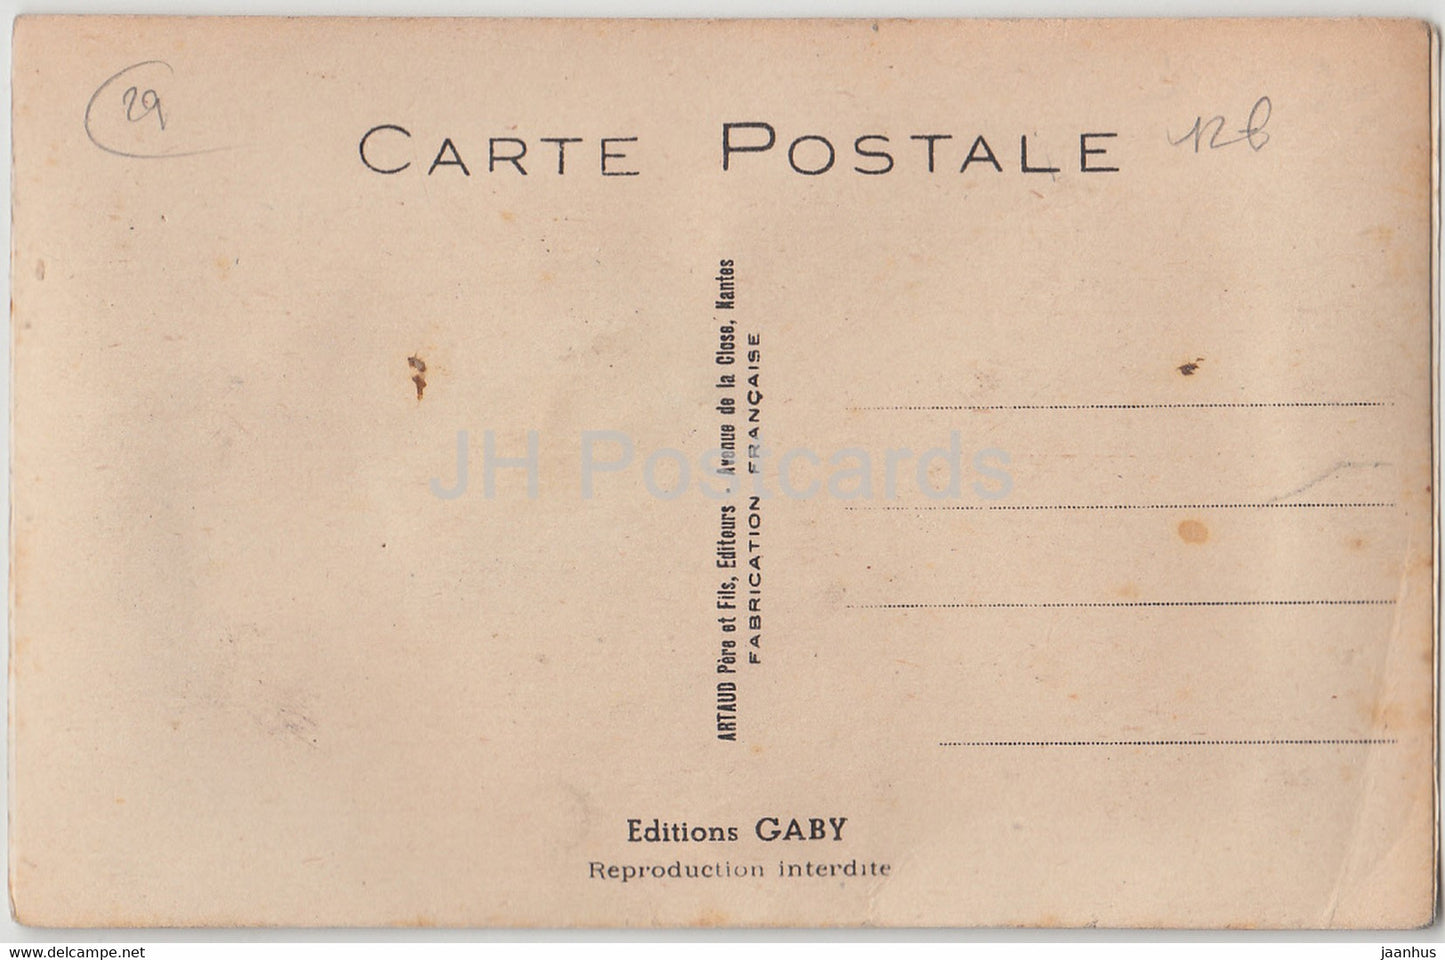 En route pour Carhaix - humour - old postcard - France - unused